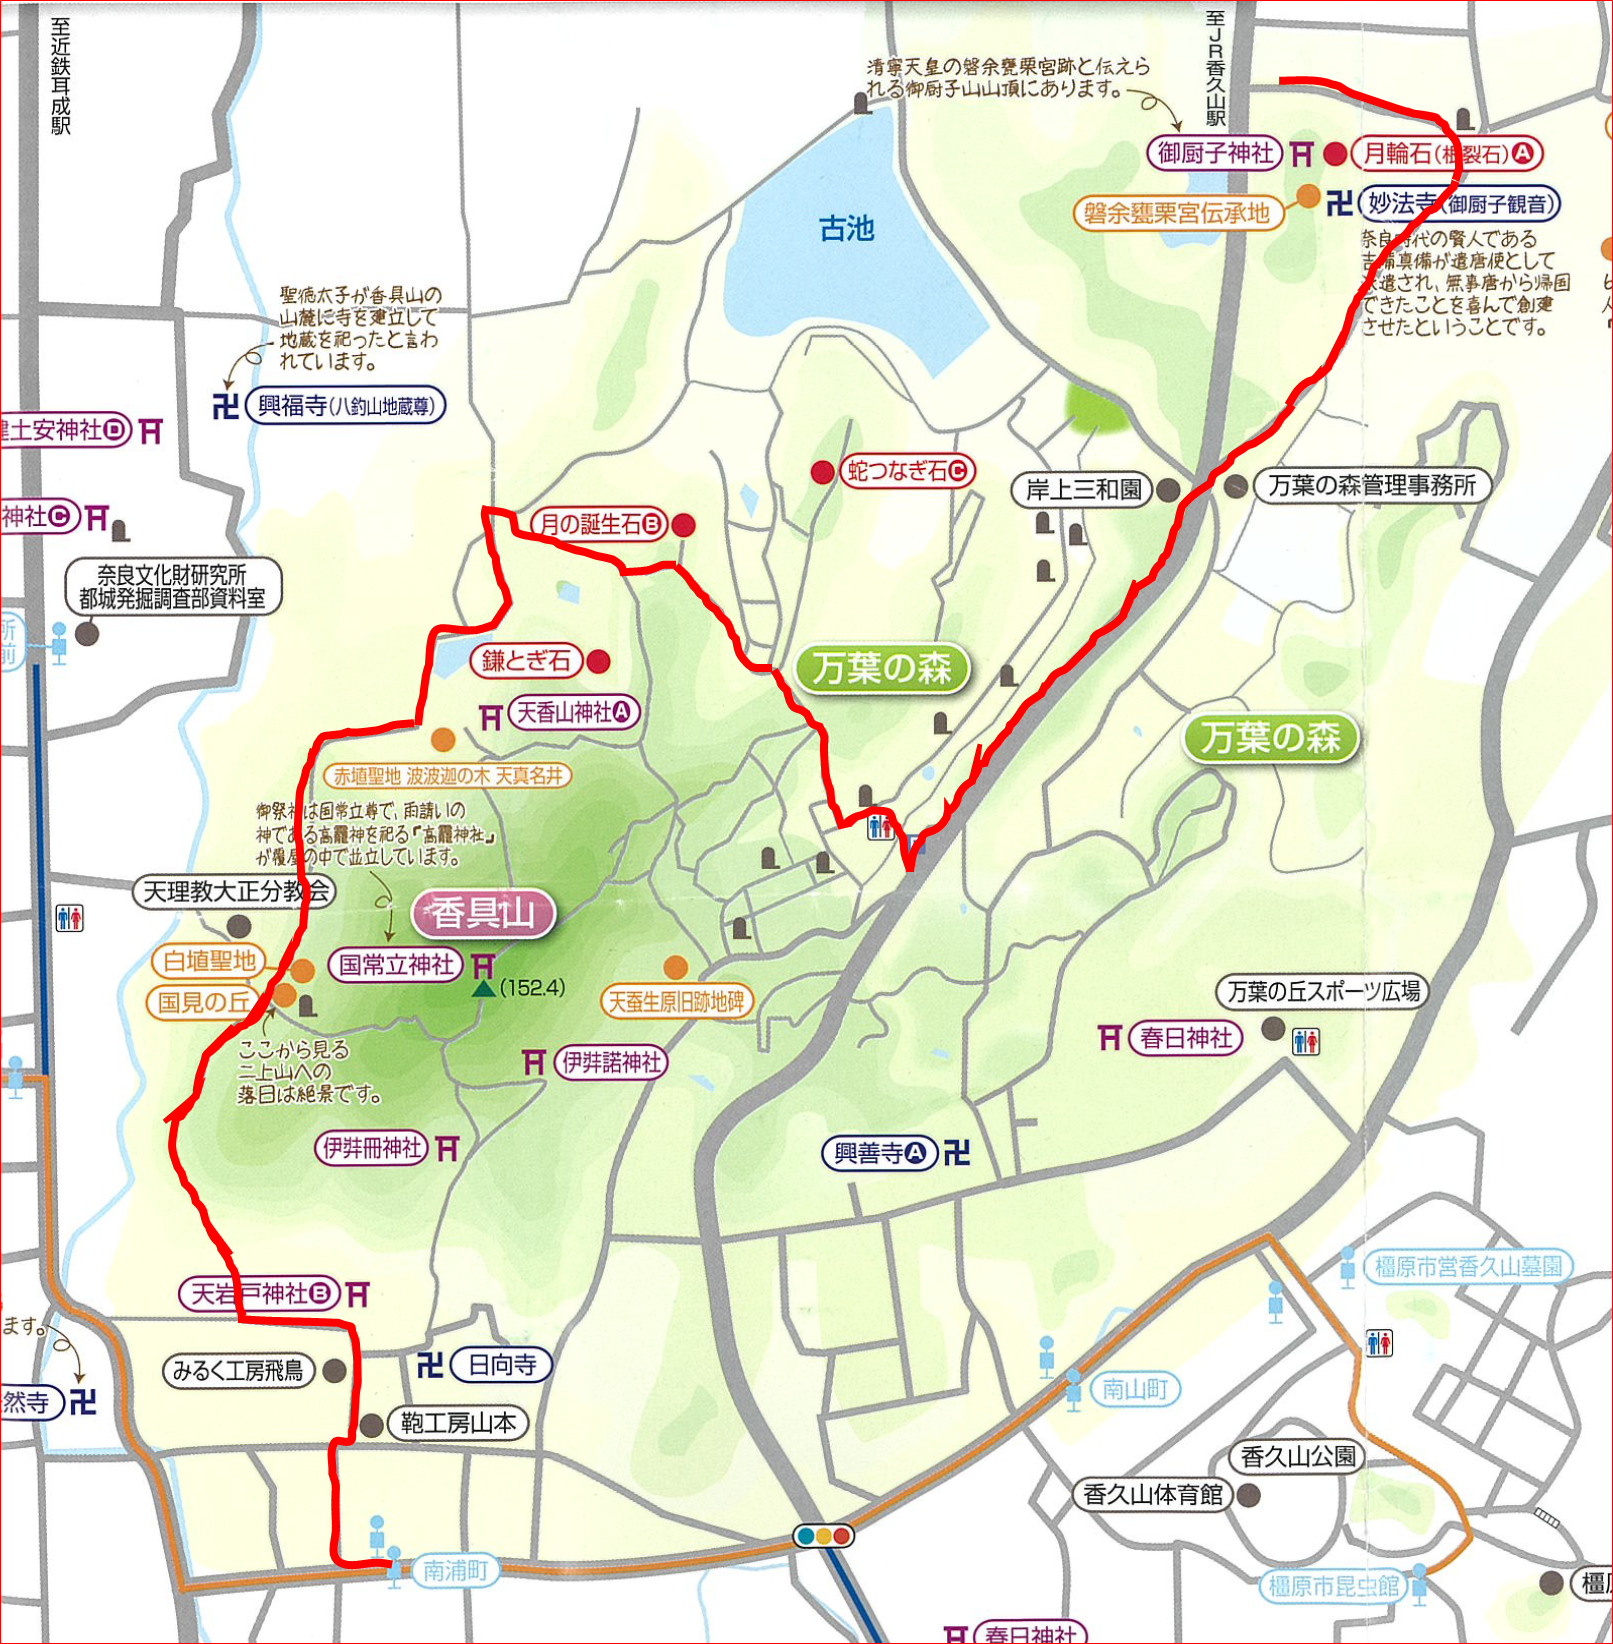 天香山神社の月輪石までの案内ルートが書かれた地図